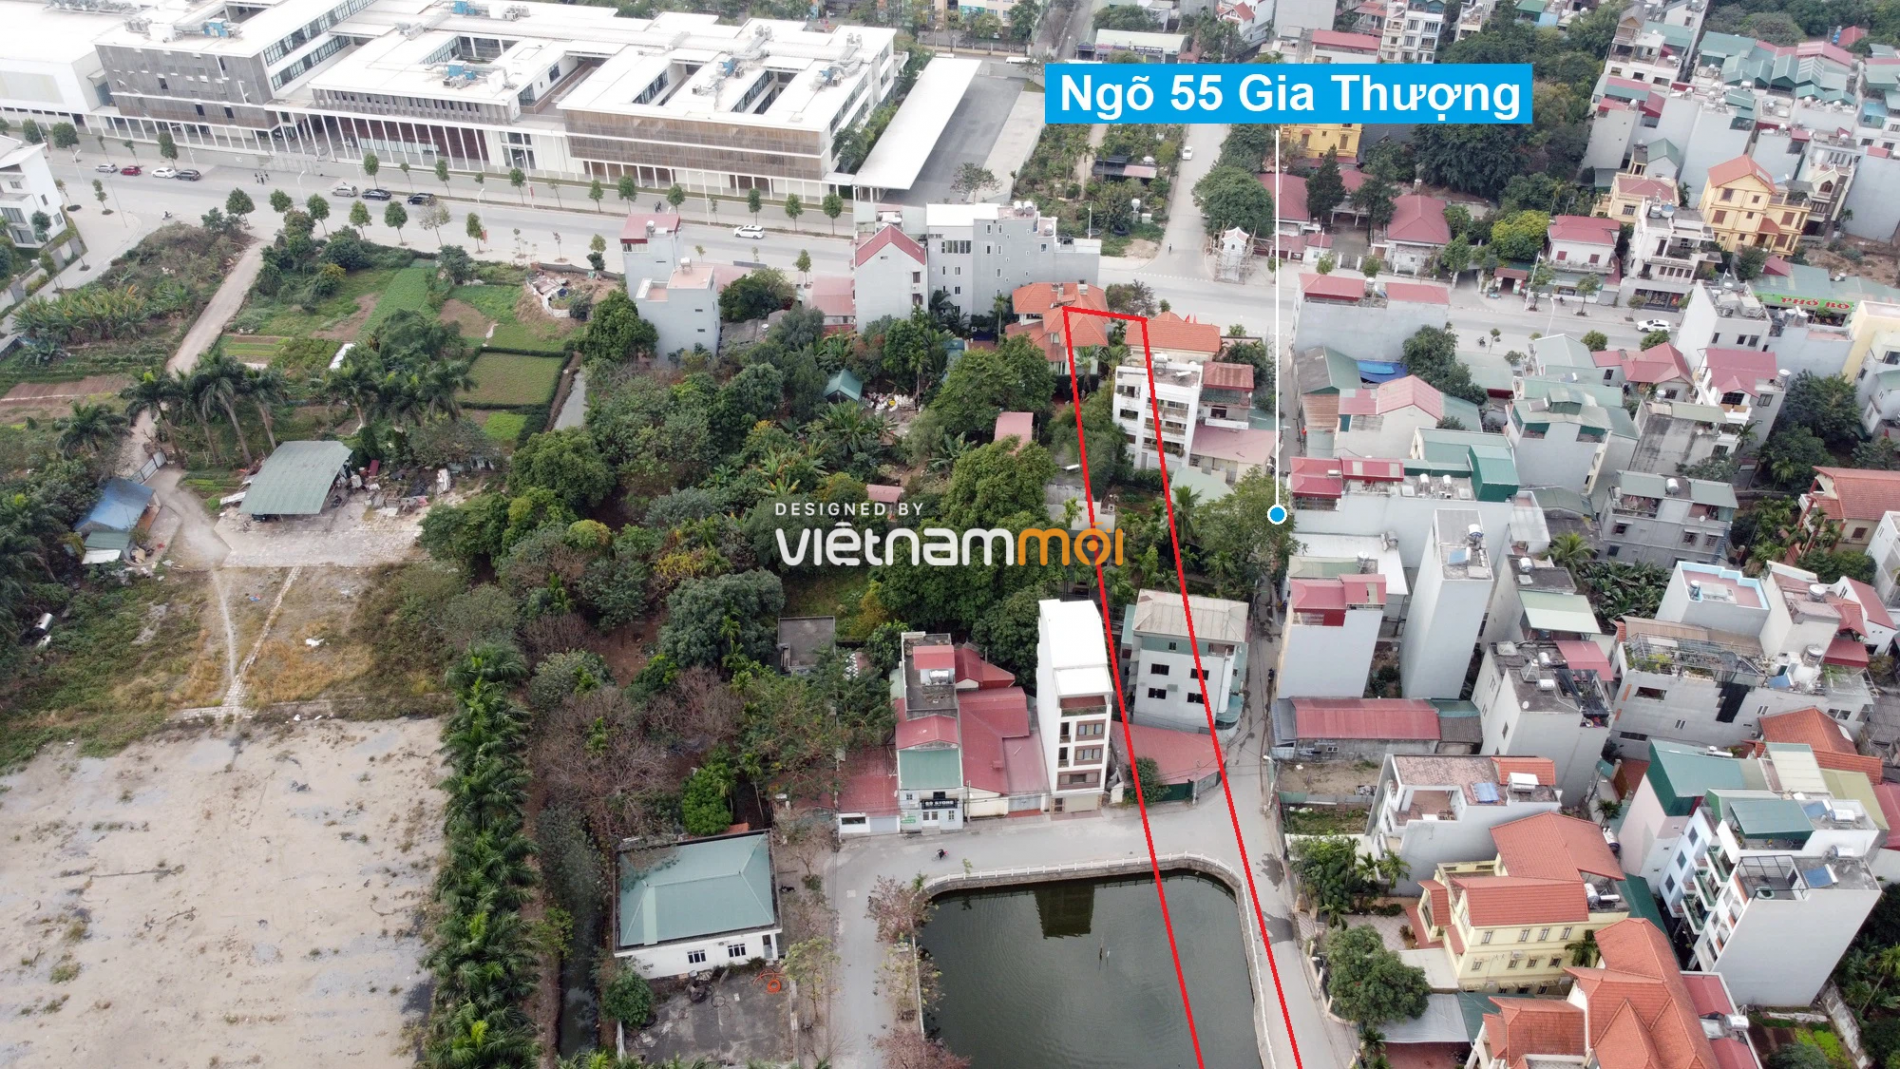 Những khu đất sắp thu hồi để mở đường ở phường Ngọc Thụy, Long Biên, Hà Nội (phần 2) - Ảnh 4.